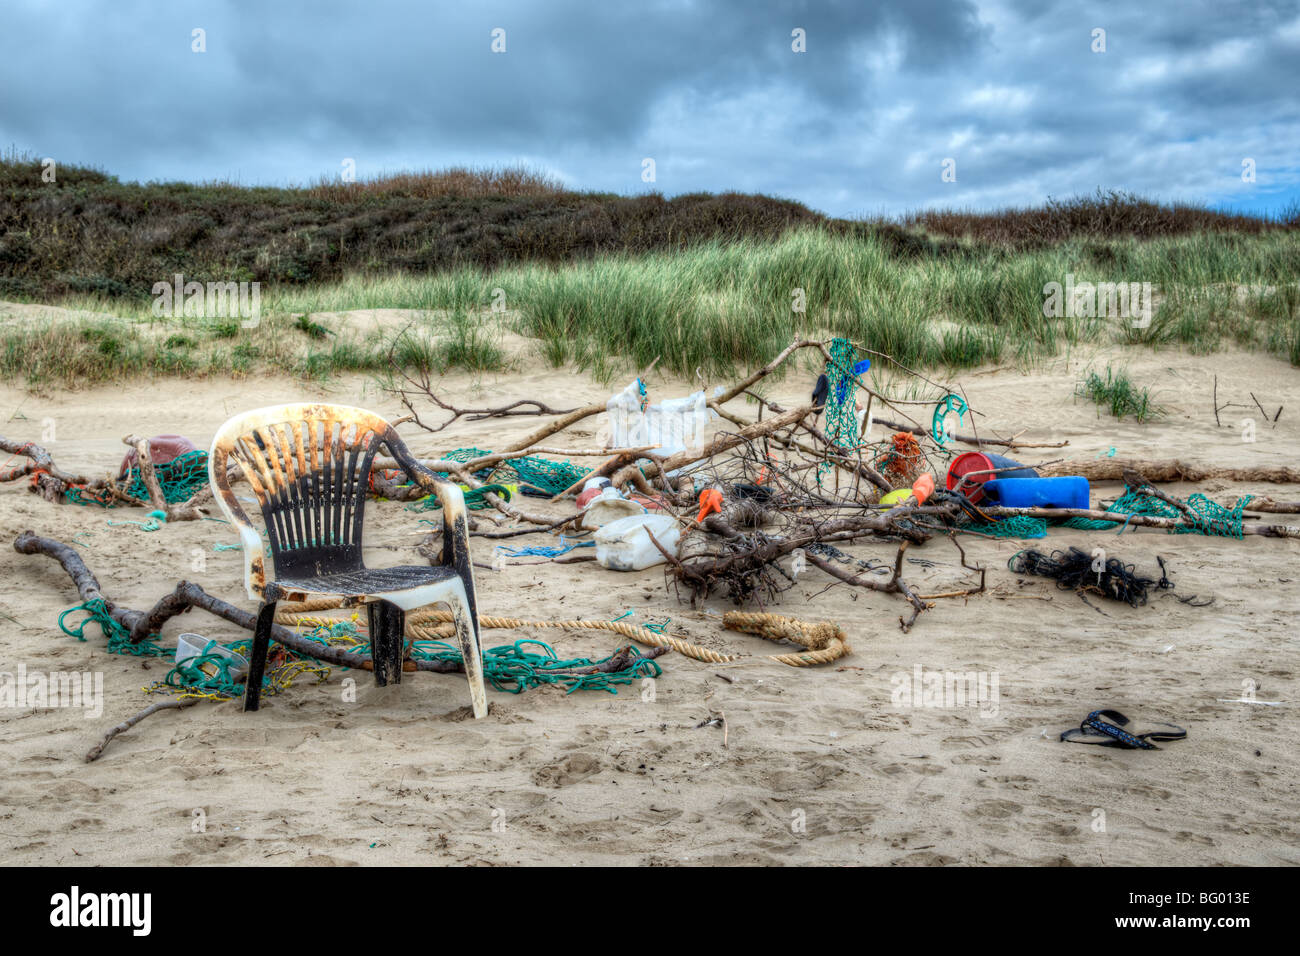 Mischung aus bunten Müll, Seile und Treibholz, die an einem Strand angespült wurde und gestapelt zusammen an Pembrey, Wales Stockfoto